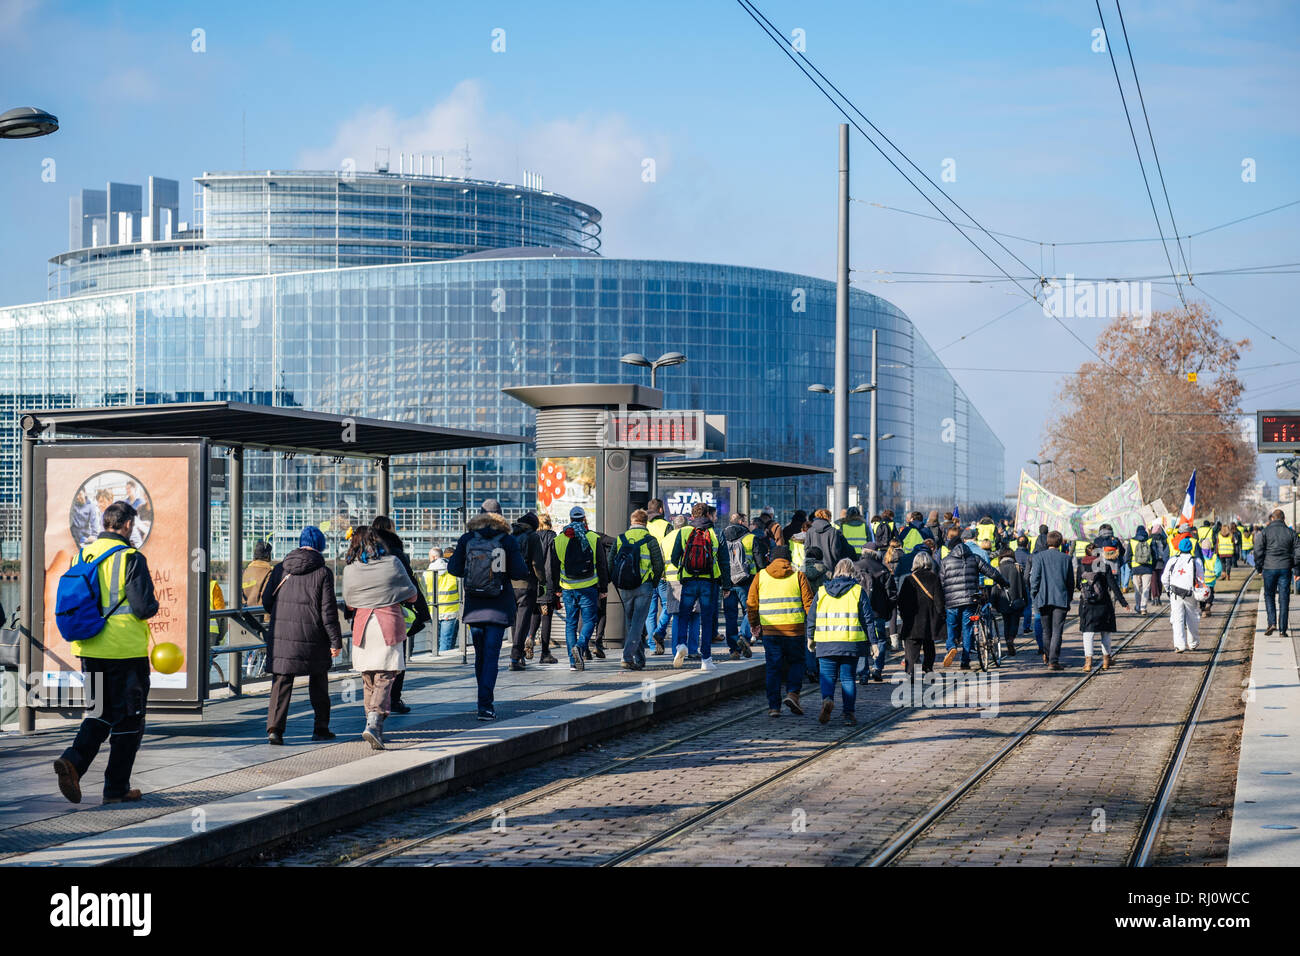 Estrasburgo, Francia - Feb 02, 2018: la gente demostrando caminando hacia el Parlamento Europeo durante la protesta de Gilets Jaunes chaleco amarillo manifestación manifestaciones antigubernamentales Foto de stock